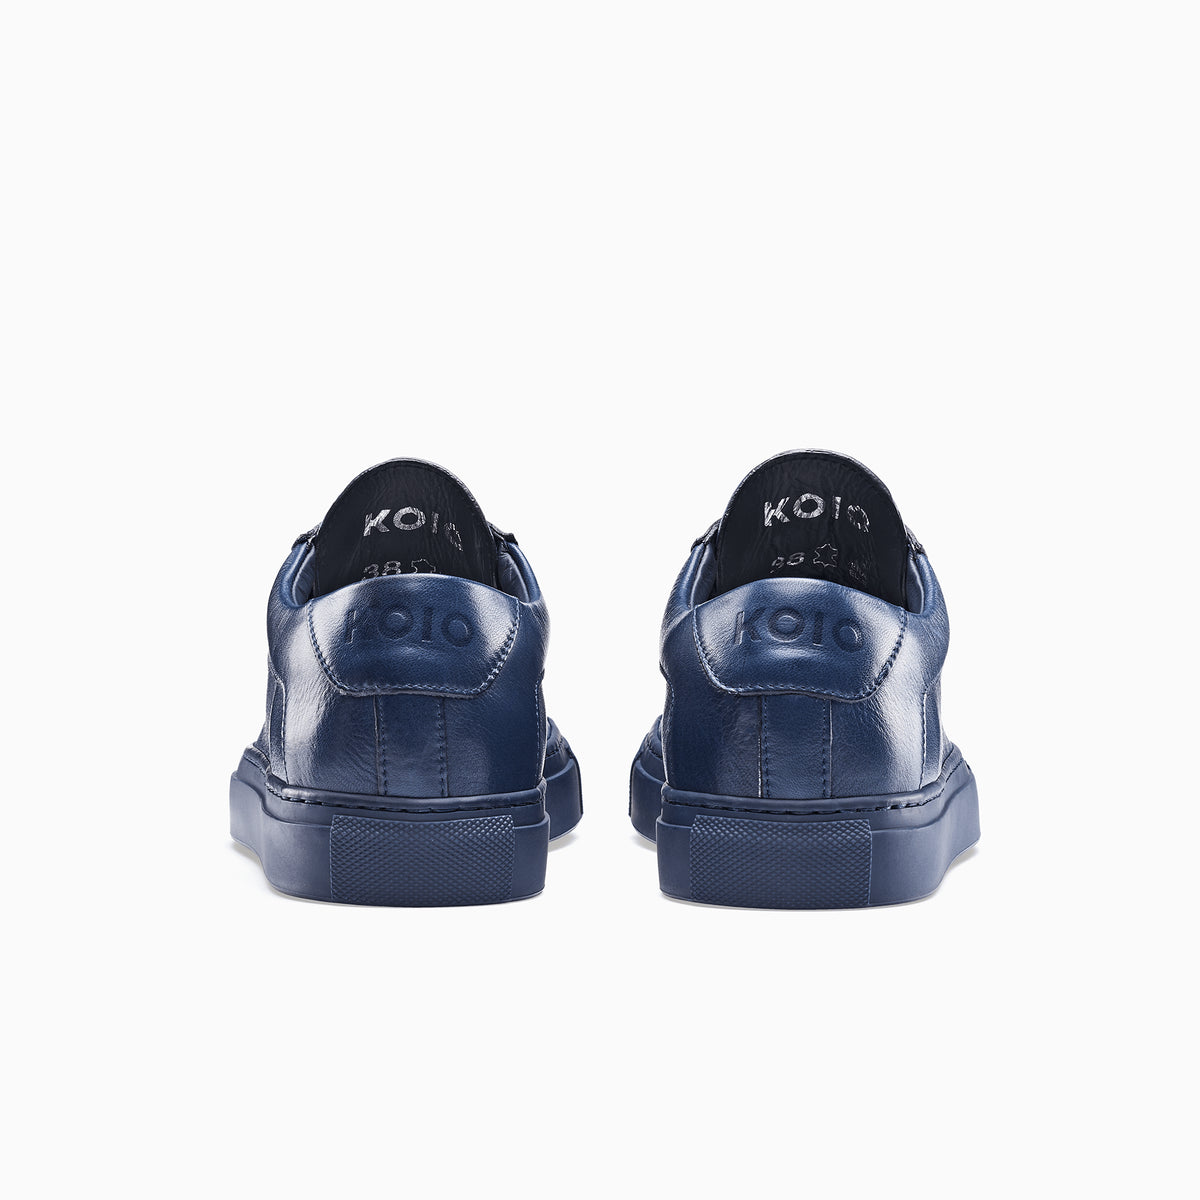 navy blue ladies sneakers